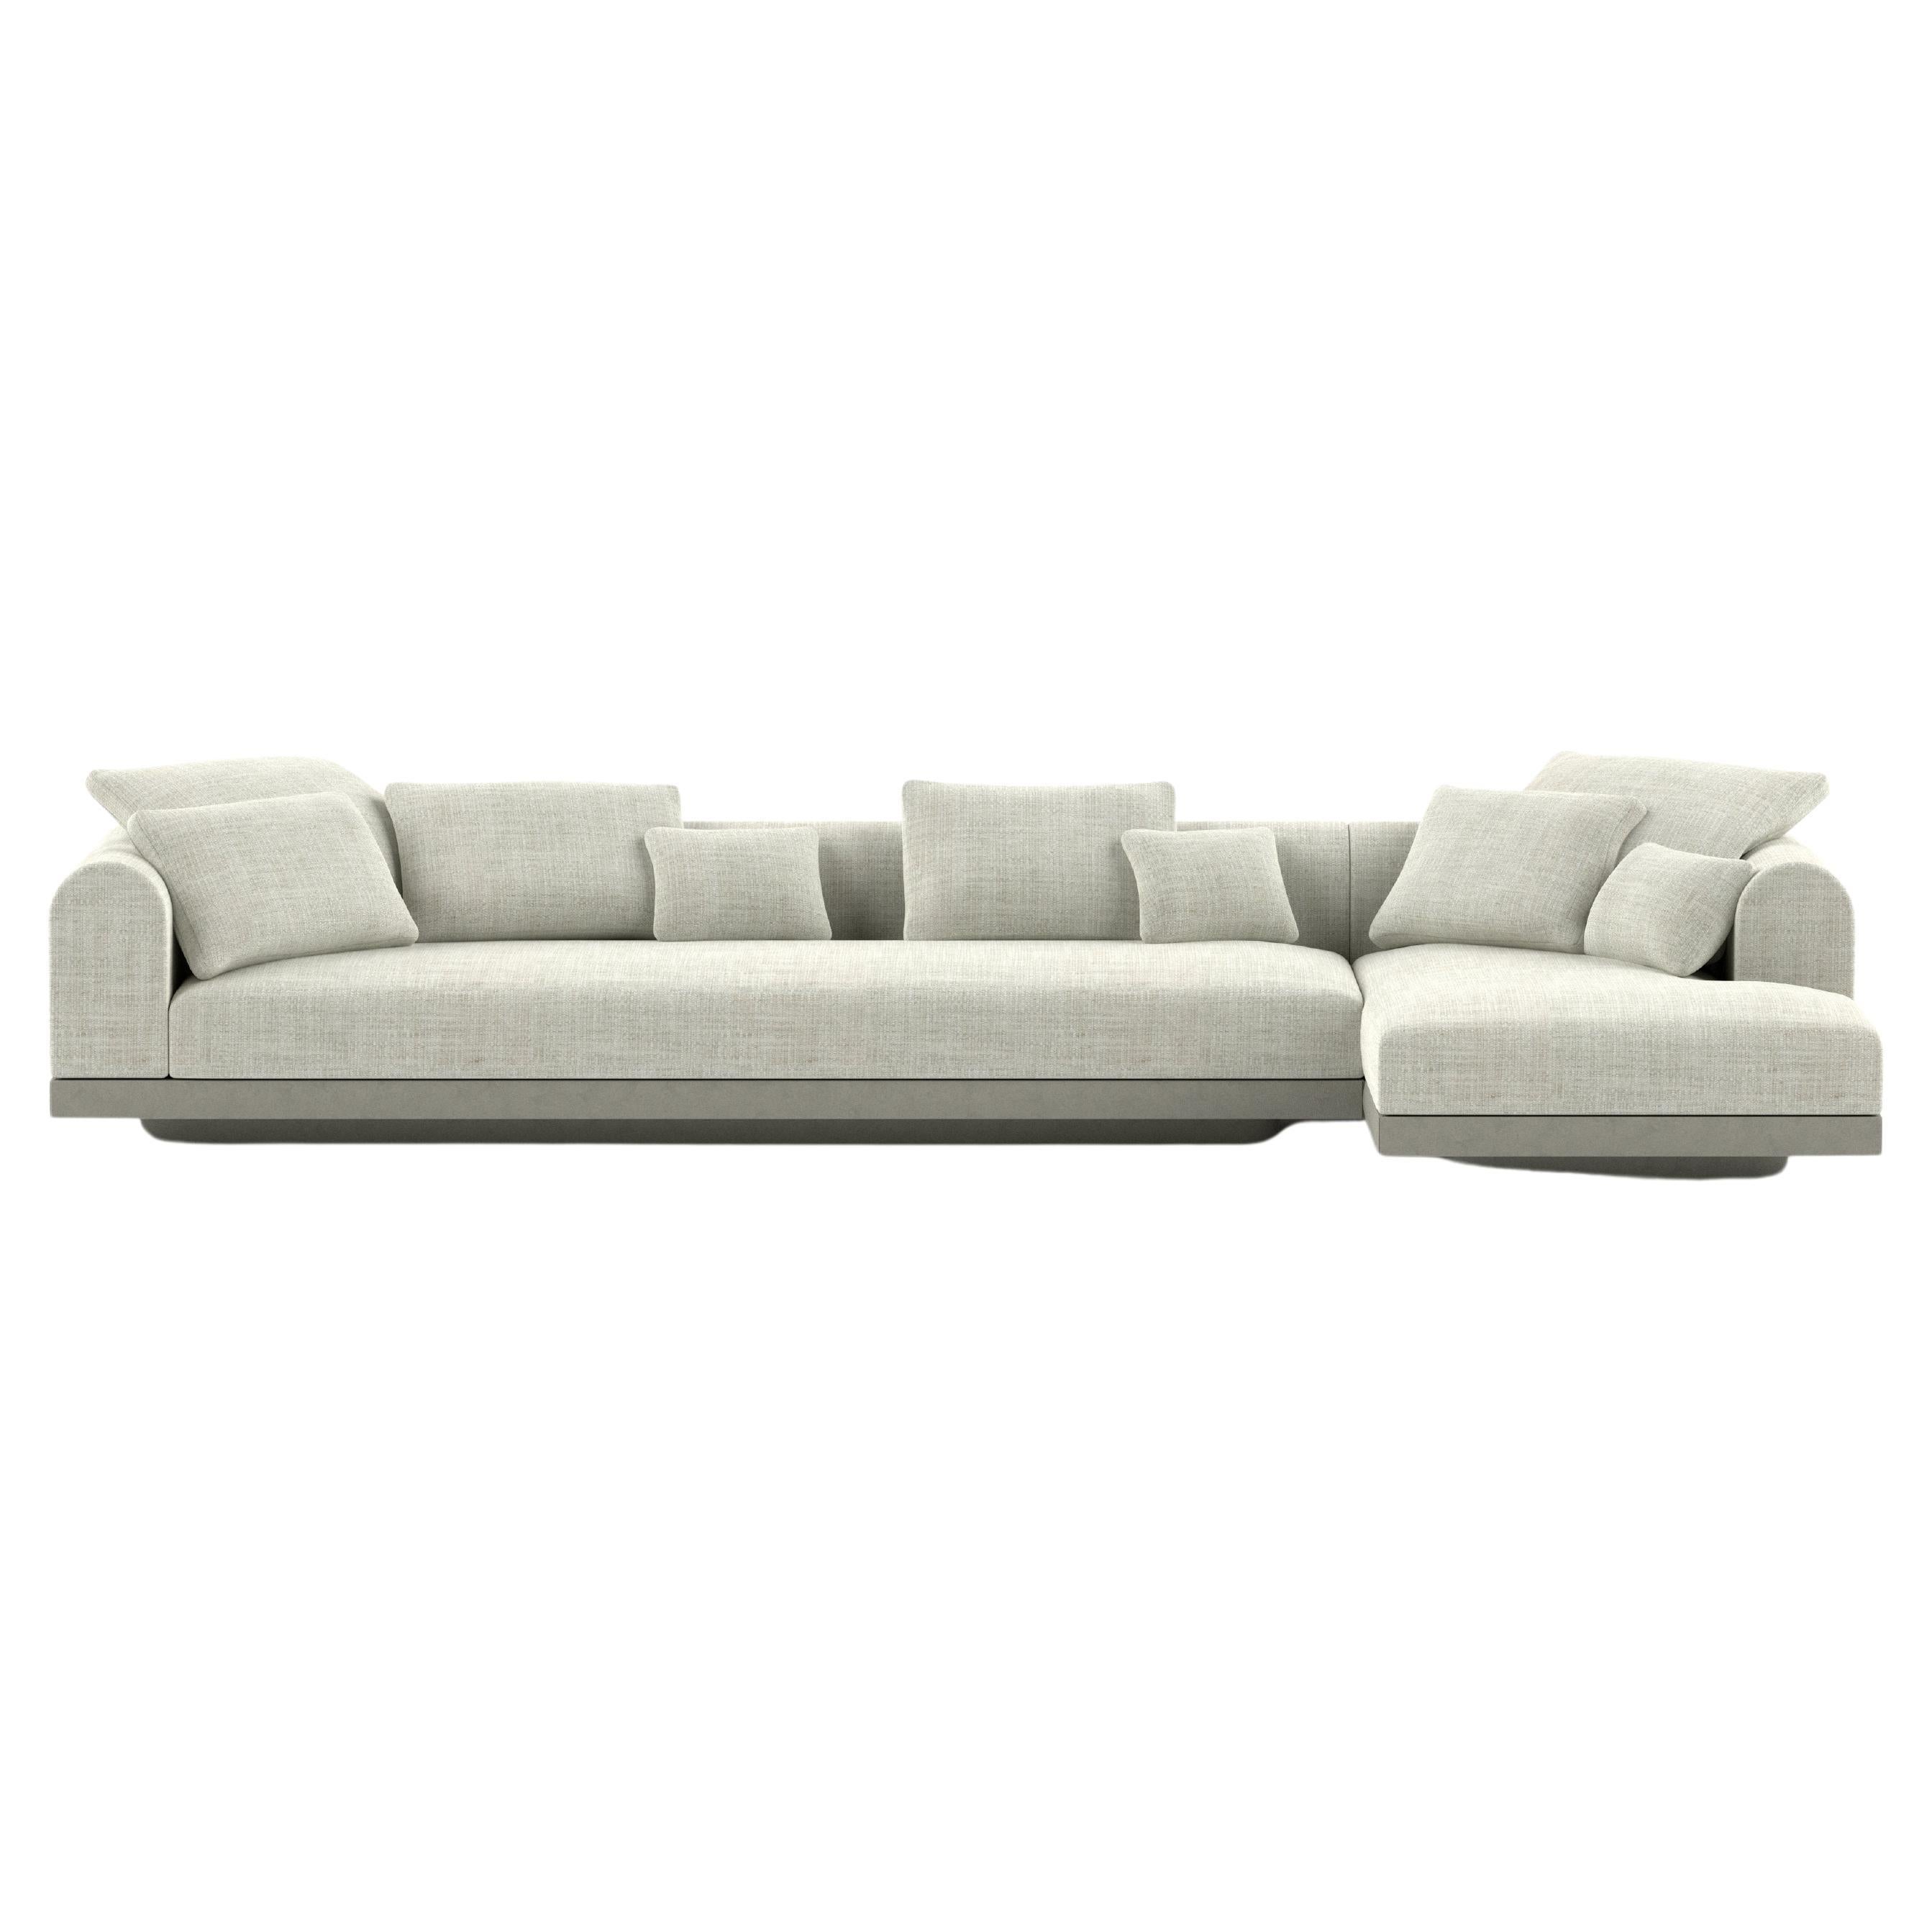 'Aqueduct' Contemporary Sofa by Poiat, Setup 2, Fox 02, High Plinth For Sale